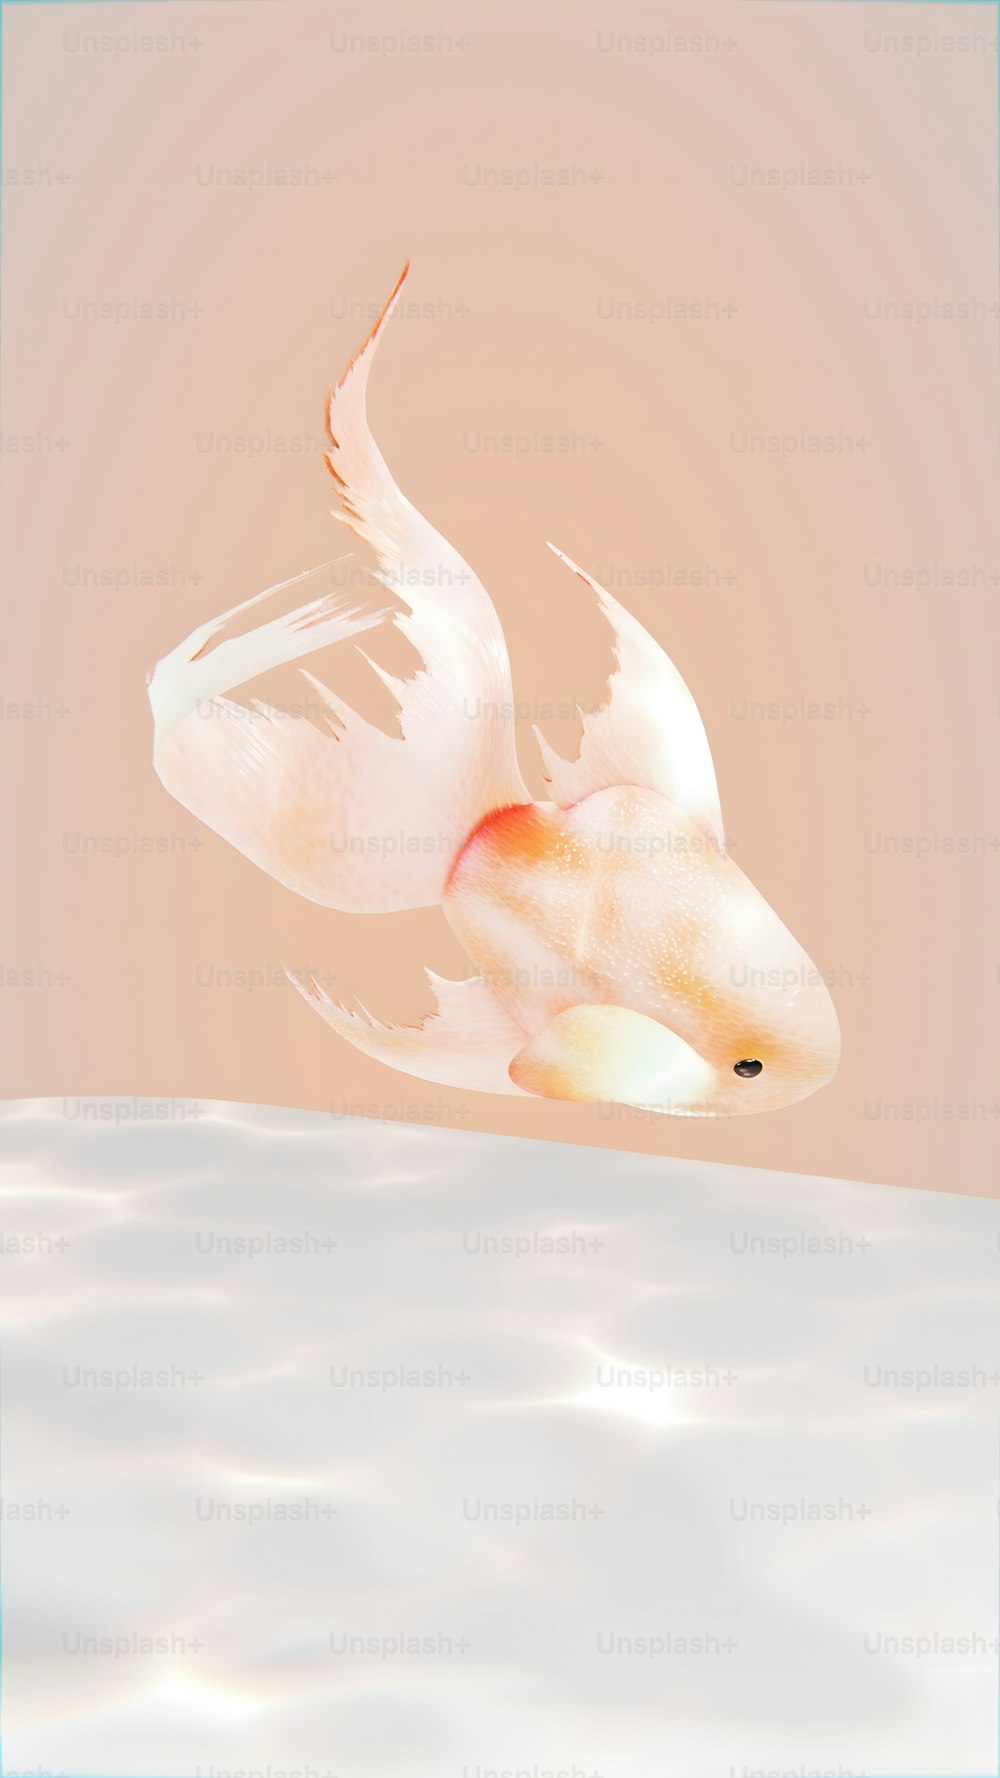 하얀 날개를 가진 금붕어가 물에 떠 있다